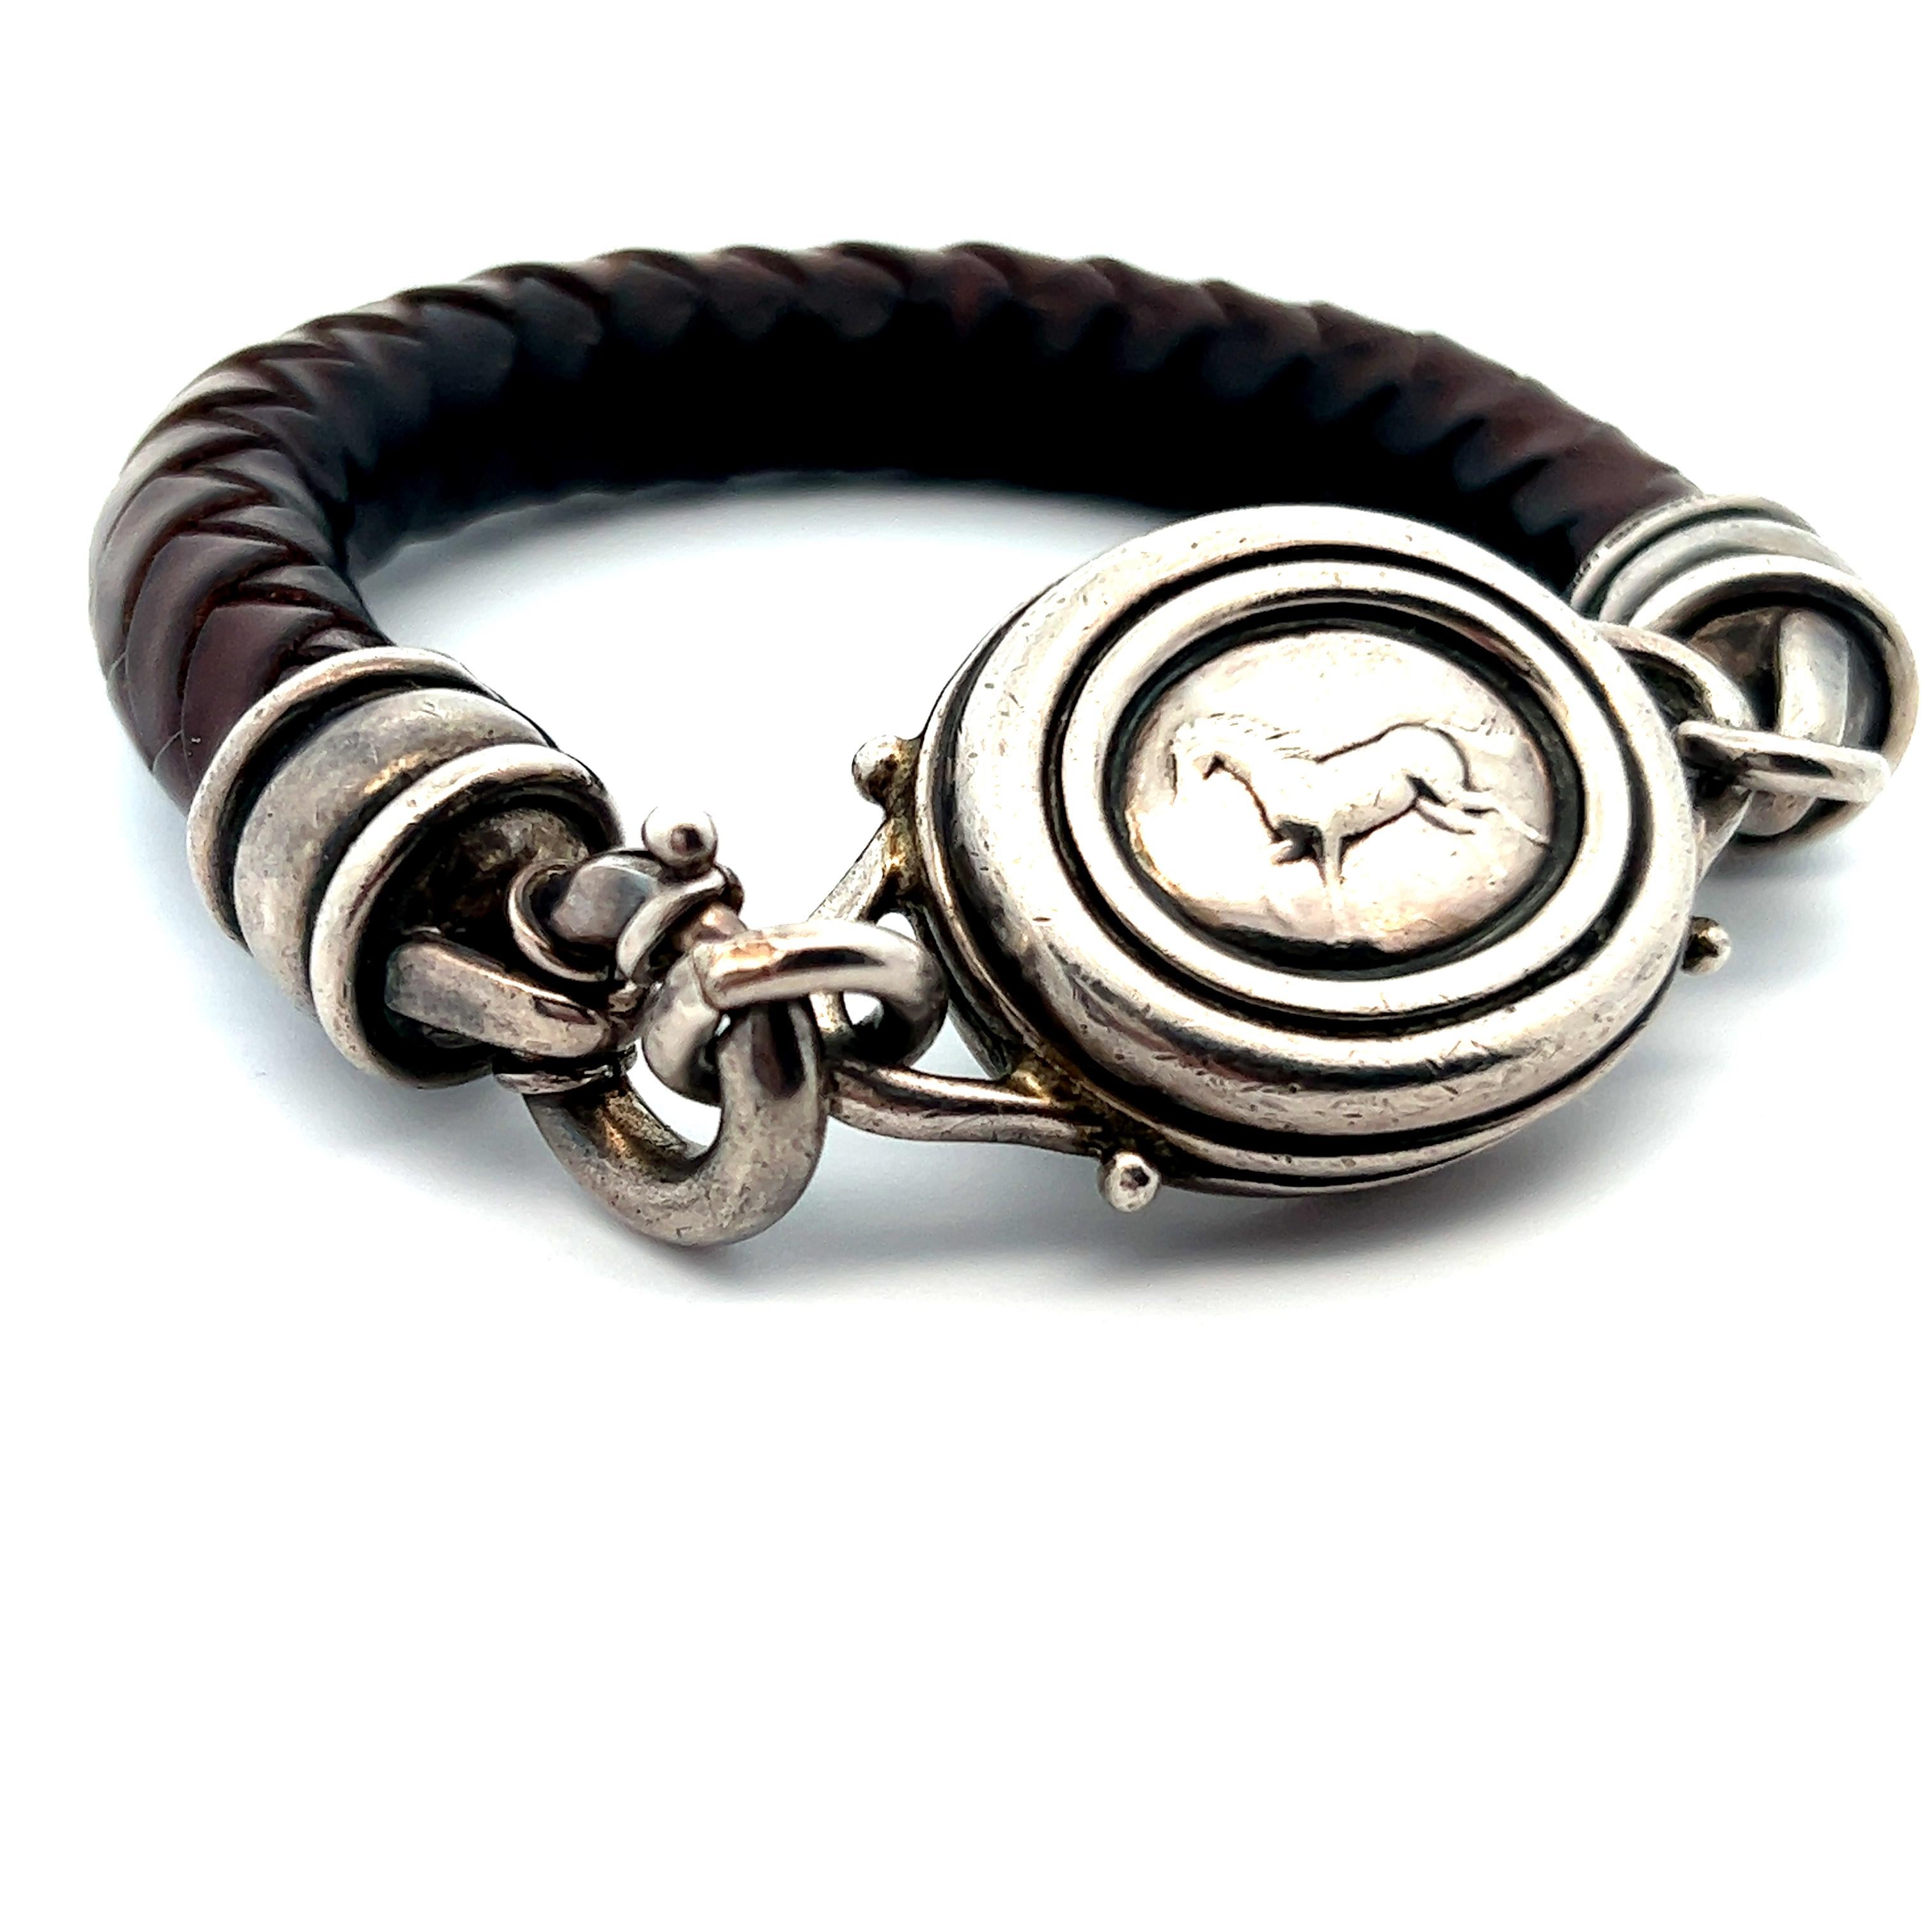 Dieses wunderschöne Armband aus Sterlingsilber von Barry Kieselstein ist aus braunem Leder geflochten und zeigt ein wunderschönes Pferdemotiv. Das Armband hat ein klobiges Design durch das breite Ledergeflecht, das diesem Armband eine beeindruckende